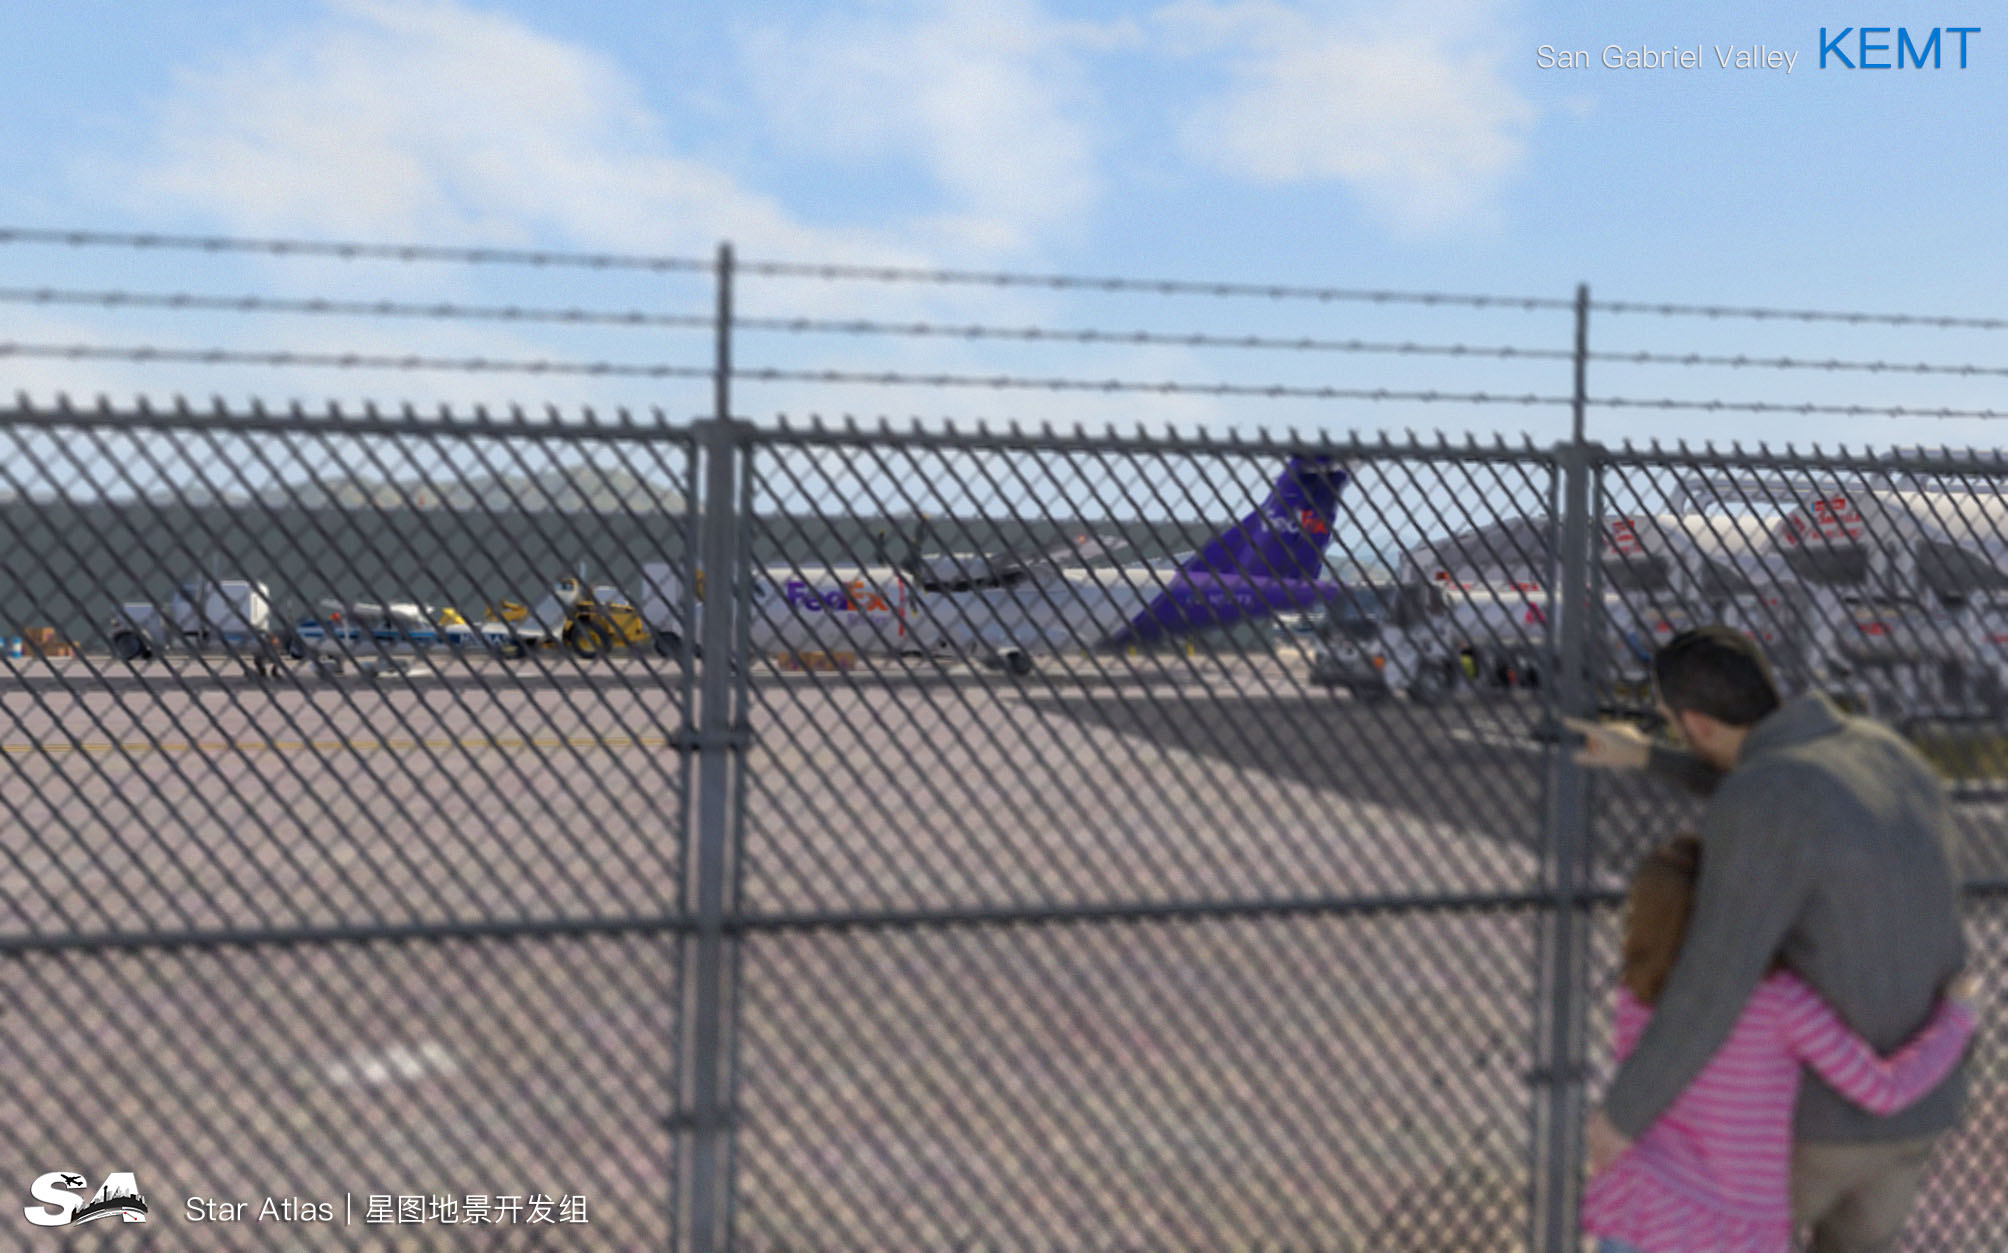 【X-Plane】KEMT-圣盖博谷机场 HD 1.0-9174 